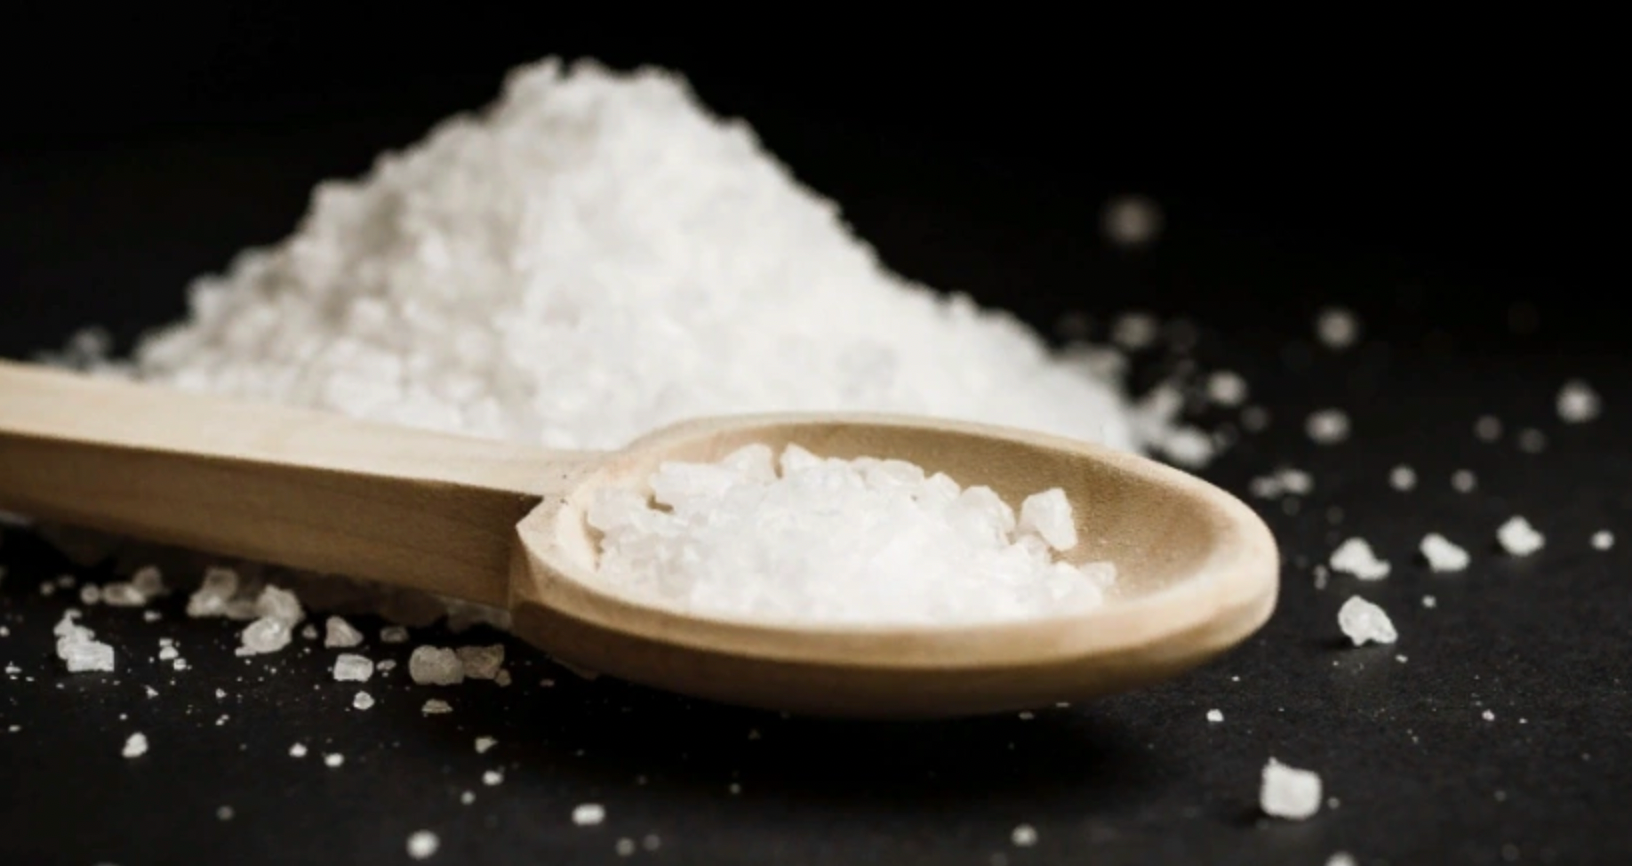 Насыпьте соль у порога и спите спокойно: старая хитрость актуальна и сегодня